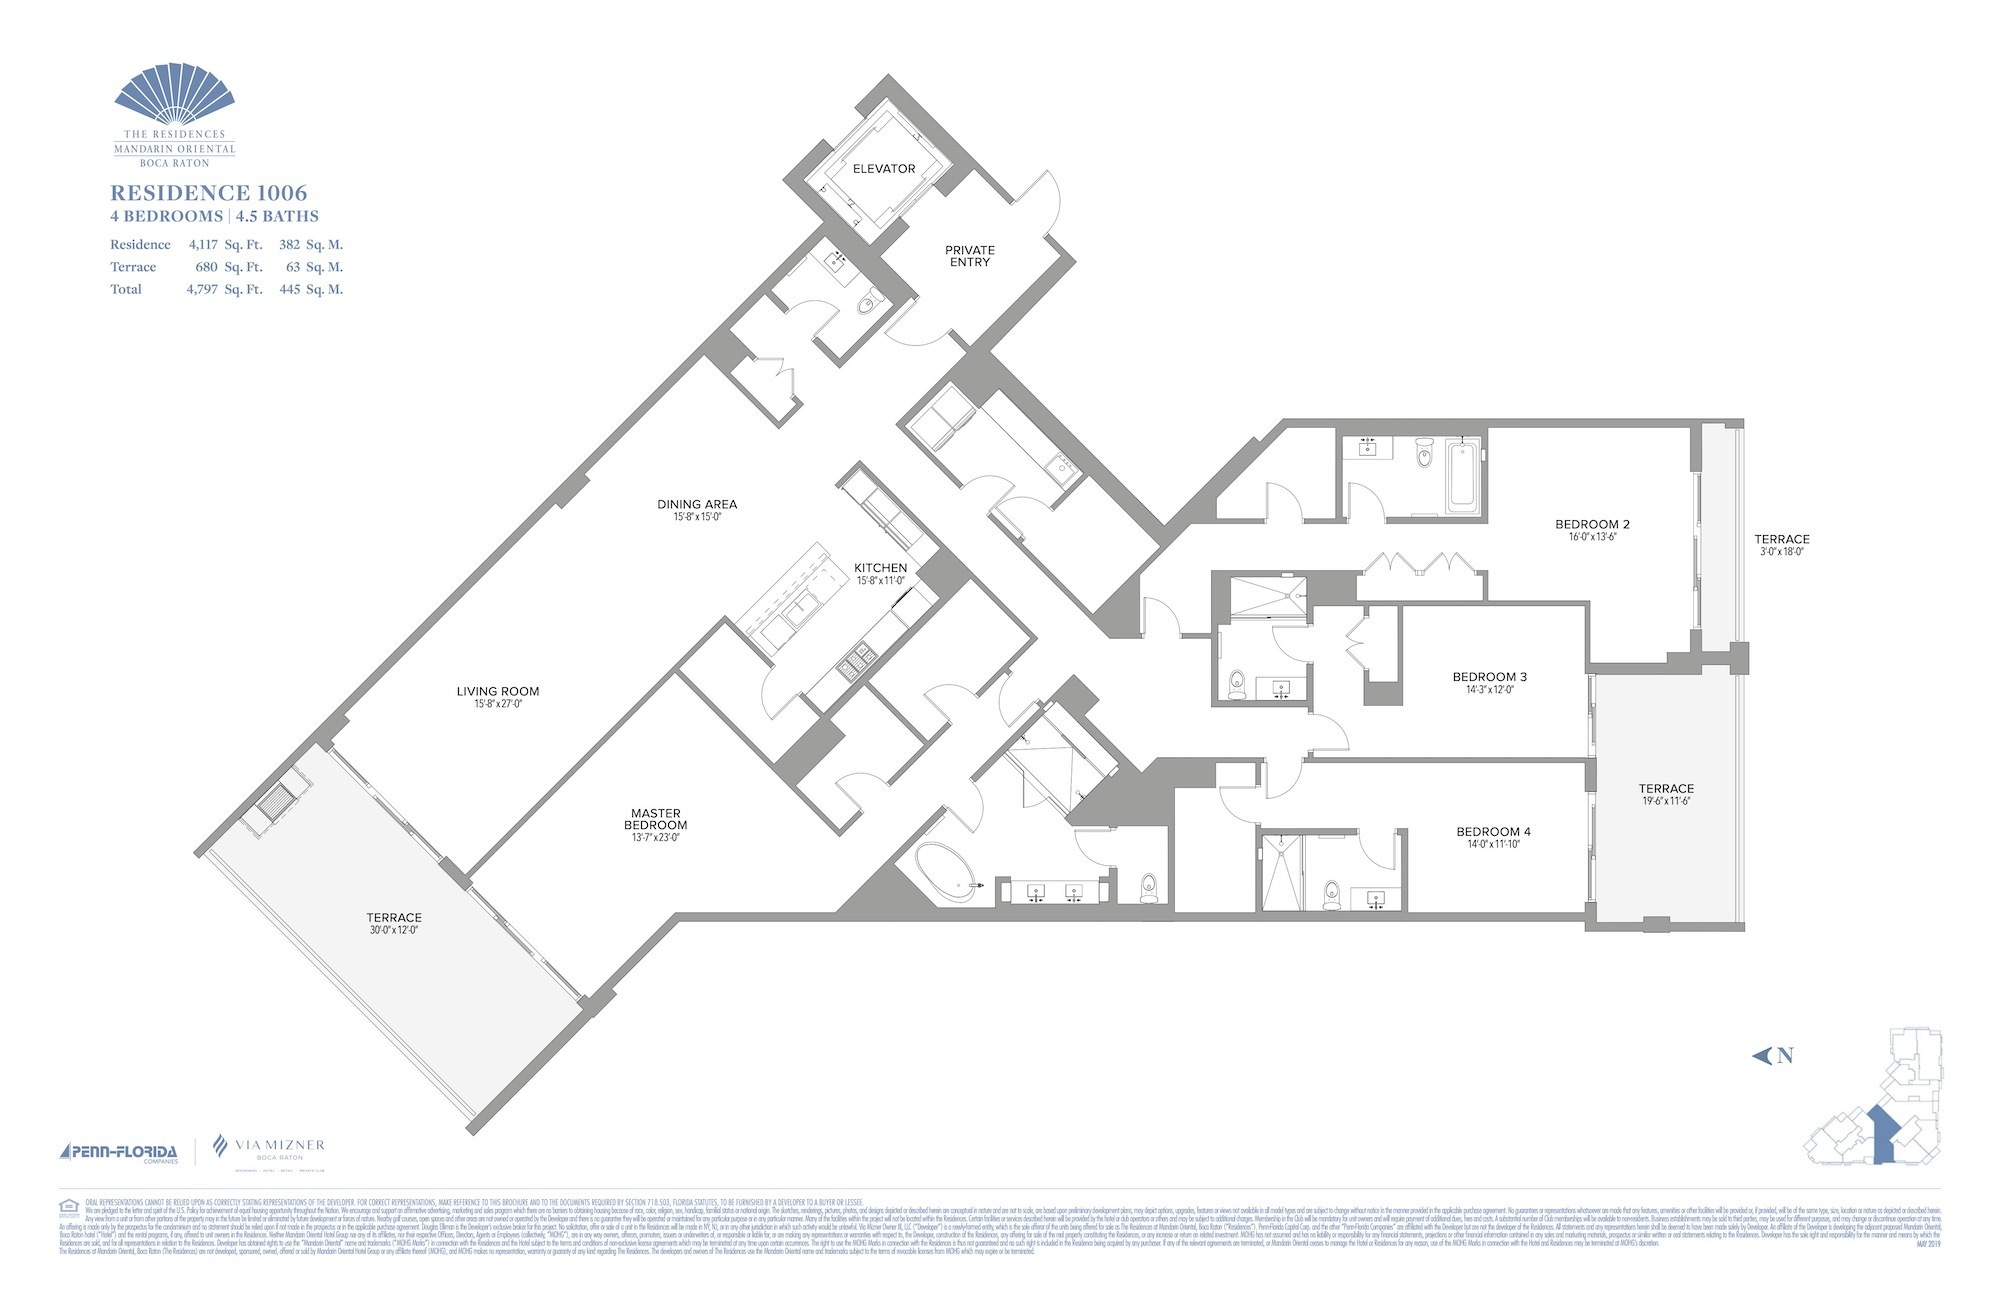 Floor Plan for Residence at Mandarin Oriental Floorplans, Residence 1006